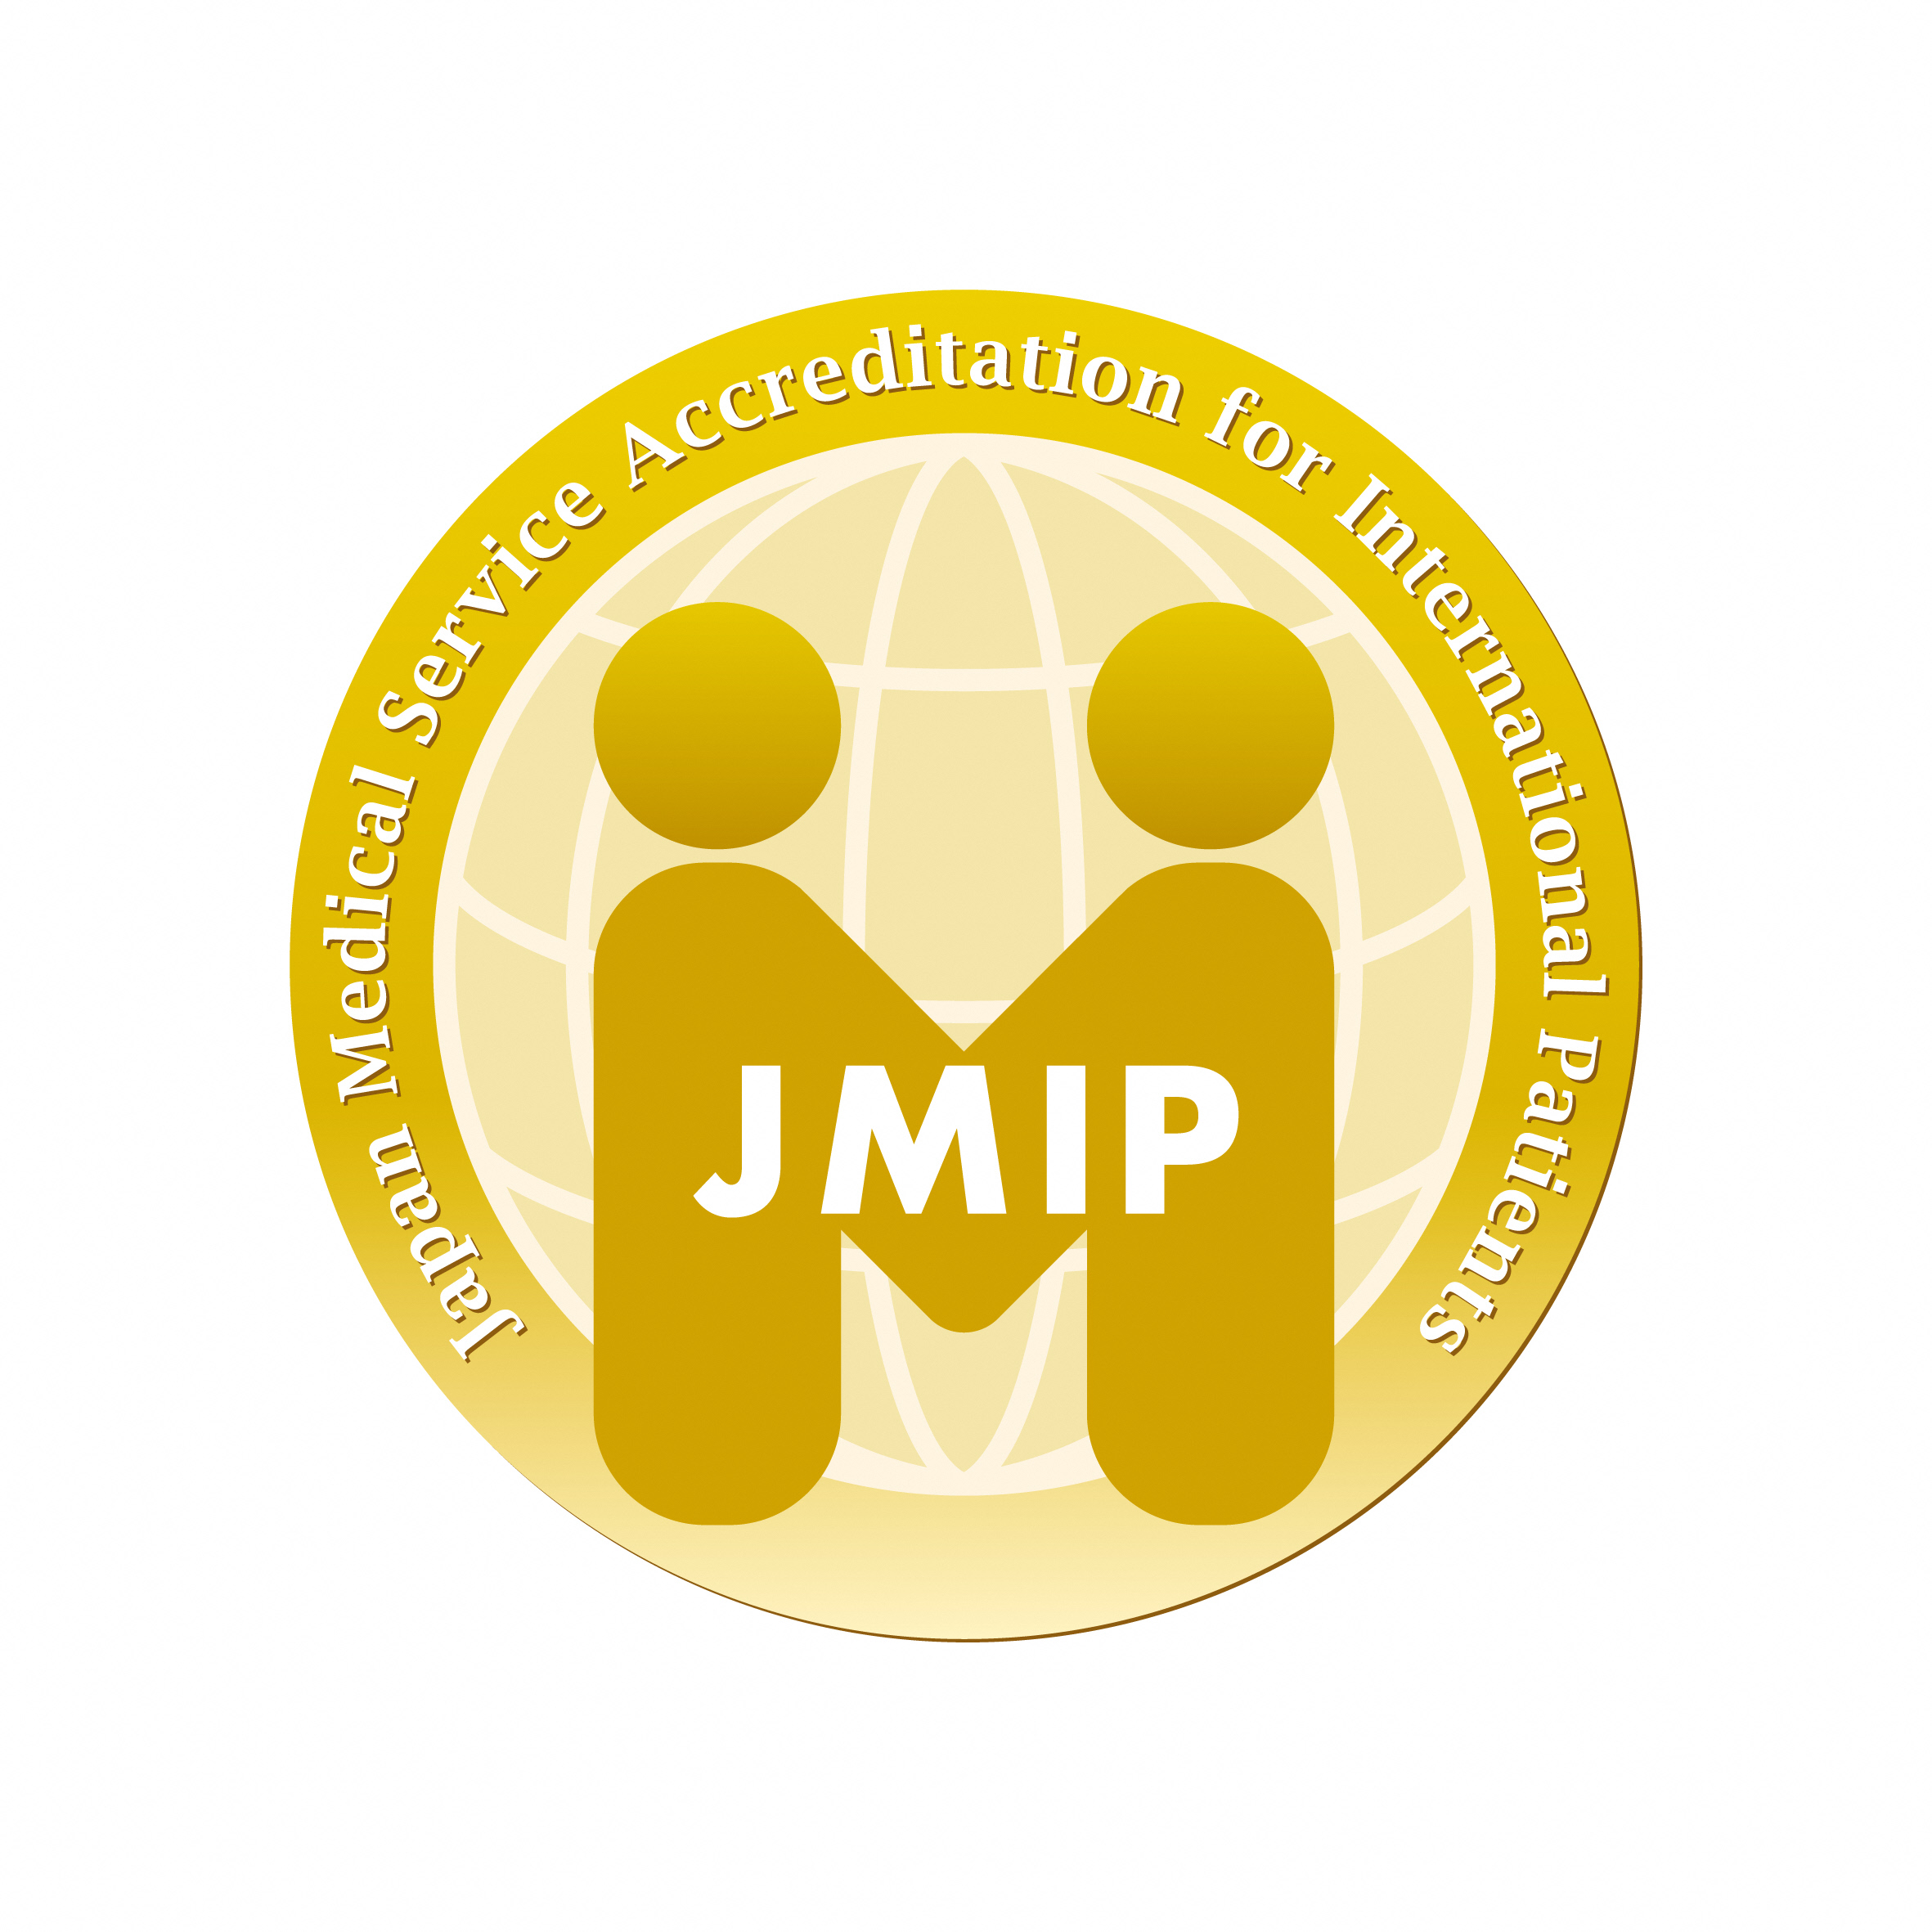 外国人患者受入れ医療機関認証制度（JMIP）の認証を取得しました！